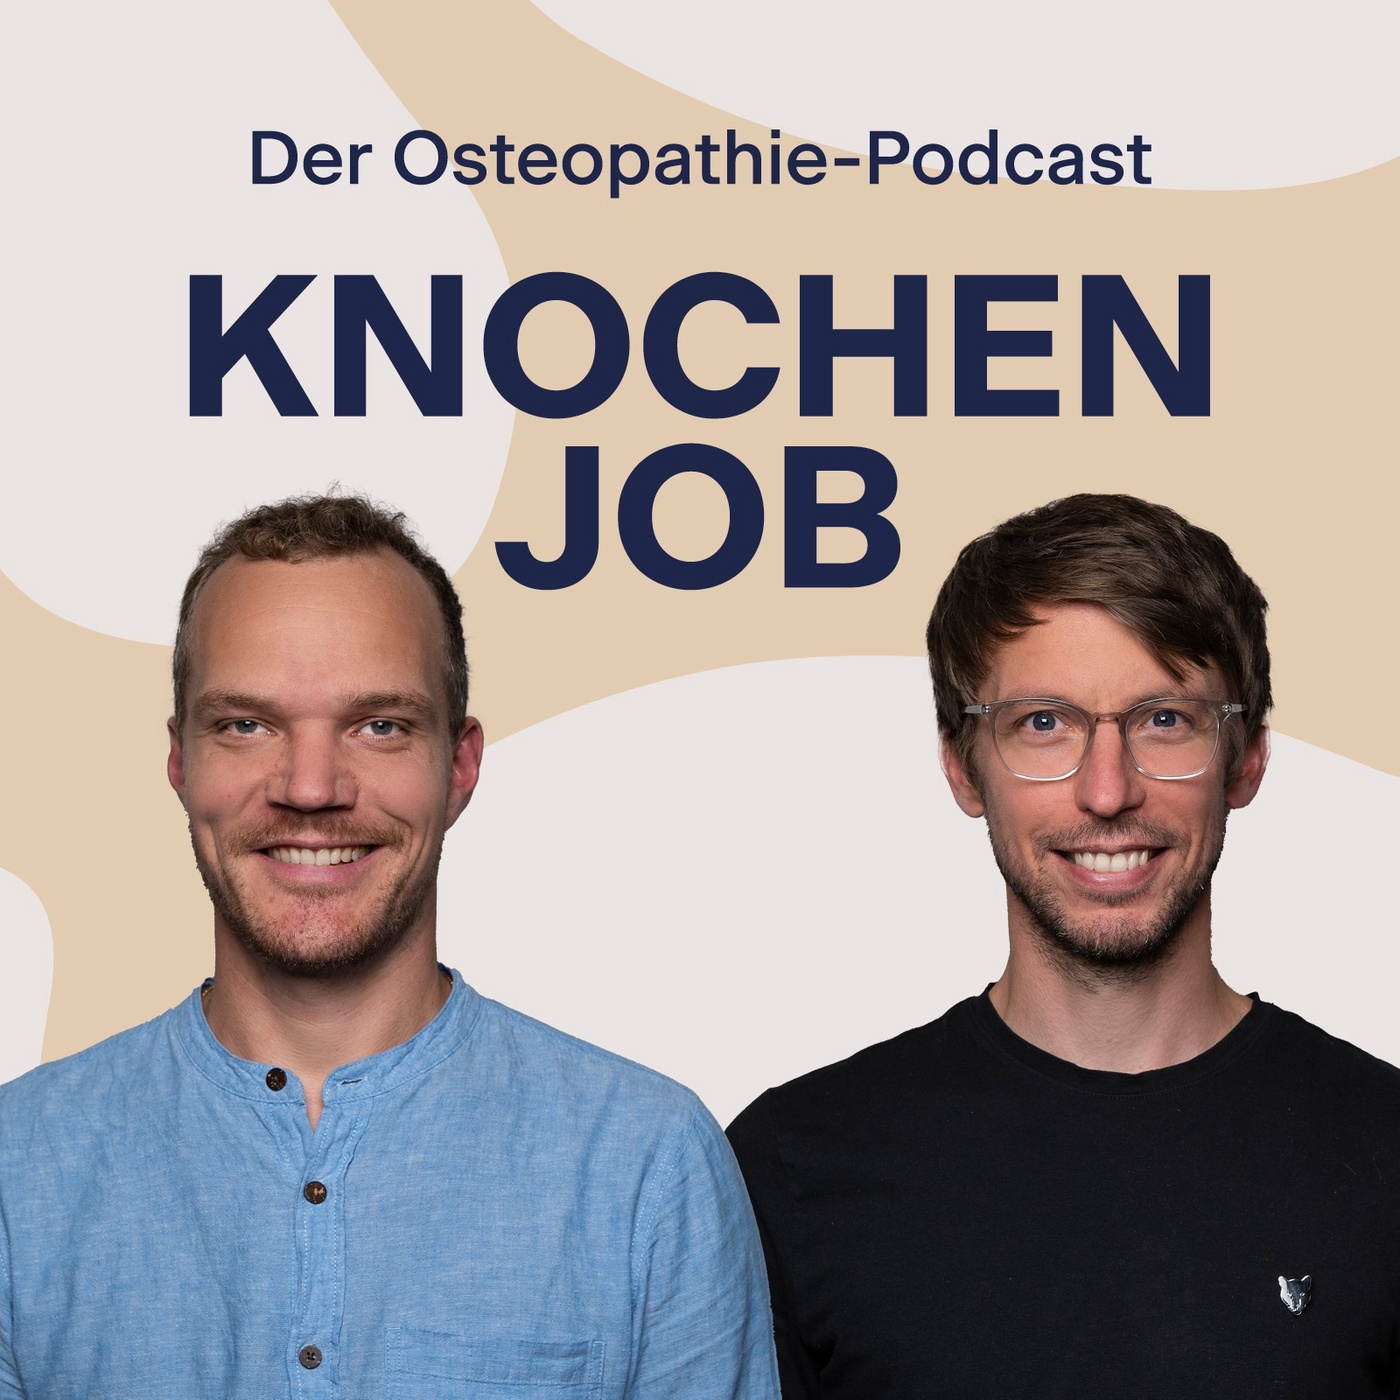 Interview-Spezial mit Thorsten Weidig: Psychologie meets Osteopathie